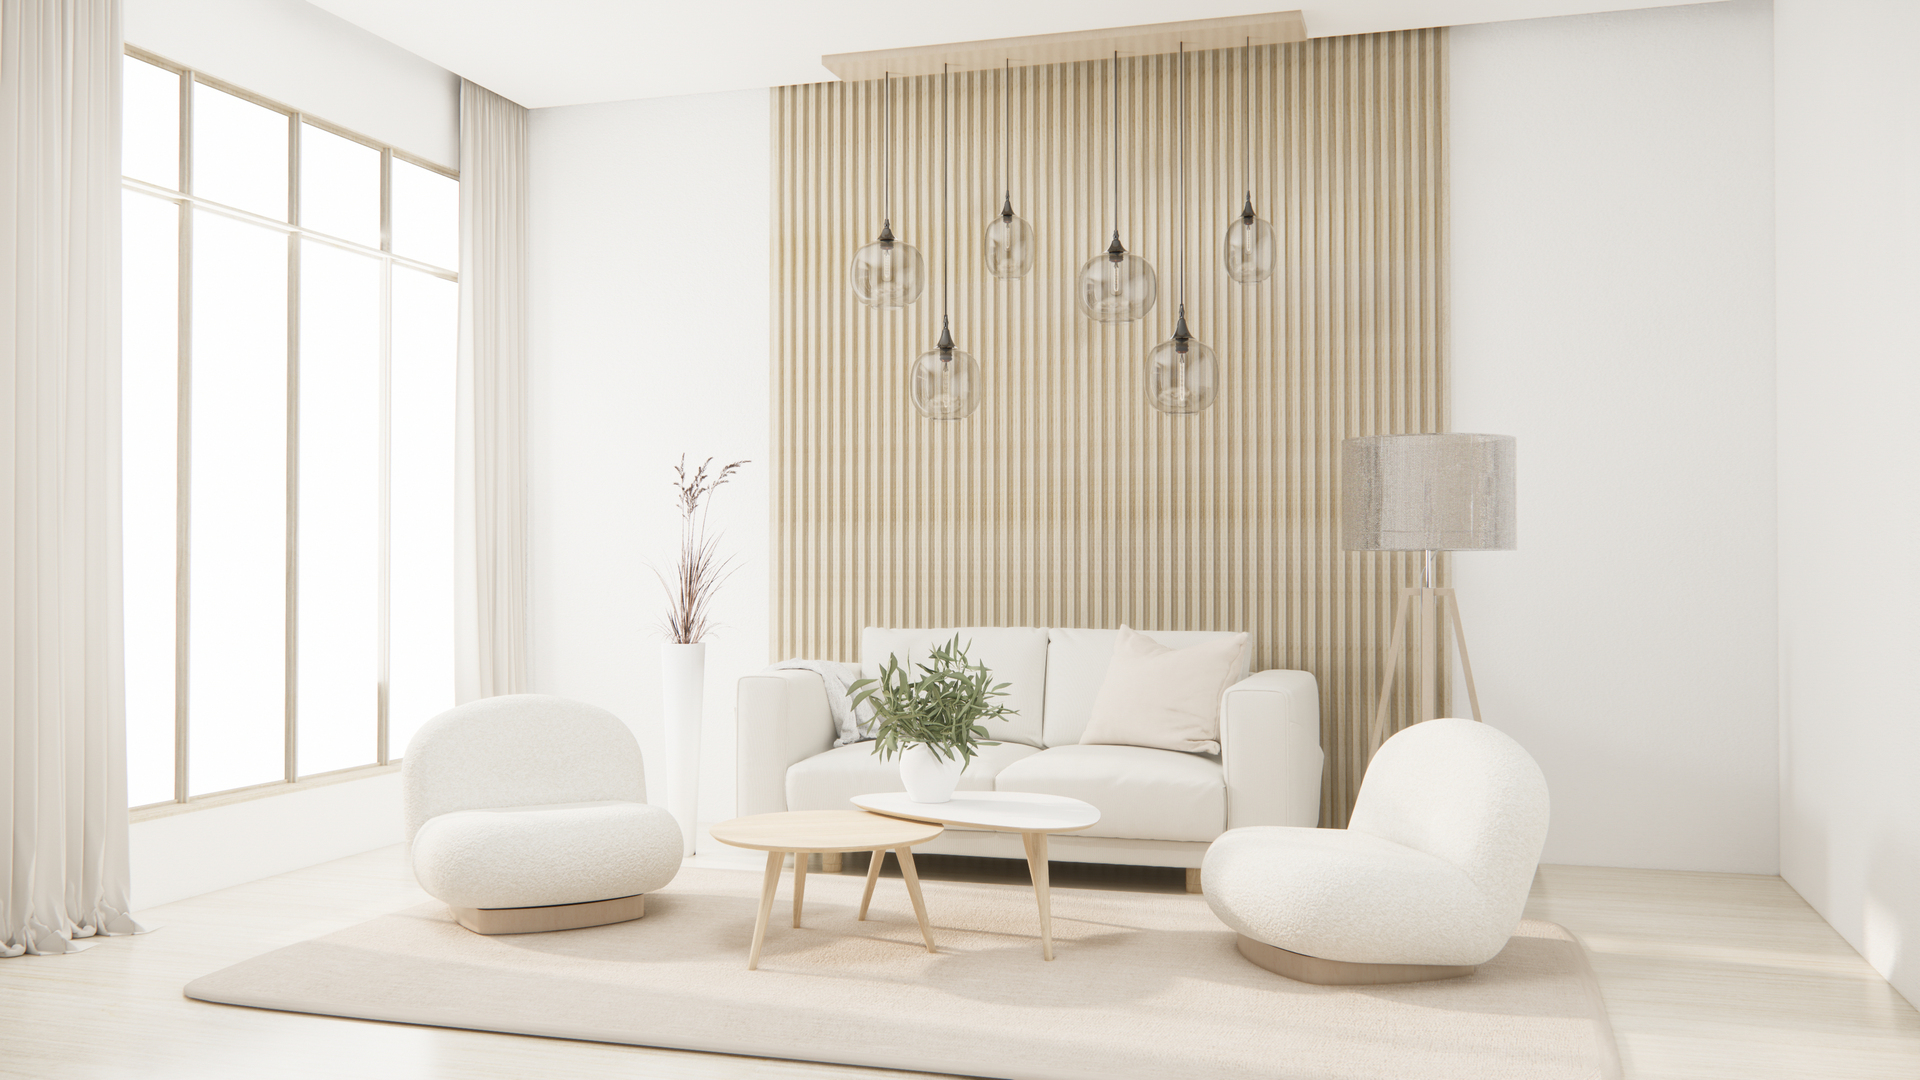 Na obrazku widoczny jest salon urządzony w stylu skandynawskim. Jasne, minimalistyczne wnętrze emanuje spokojem i harmonią. Naturalne materiały i stonowane kolory tworzą przytulną atmosferę, idealną do relaksu i wypoczynku